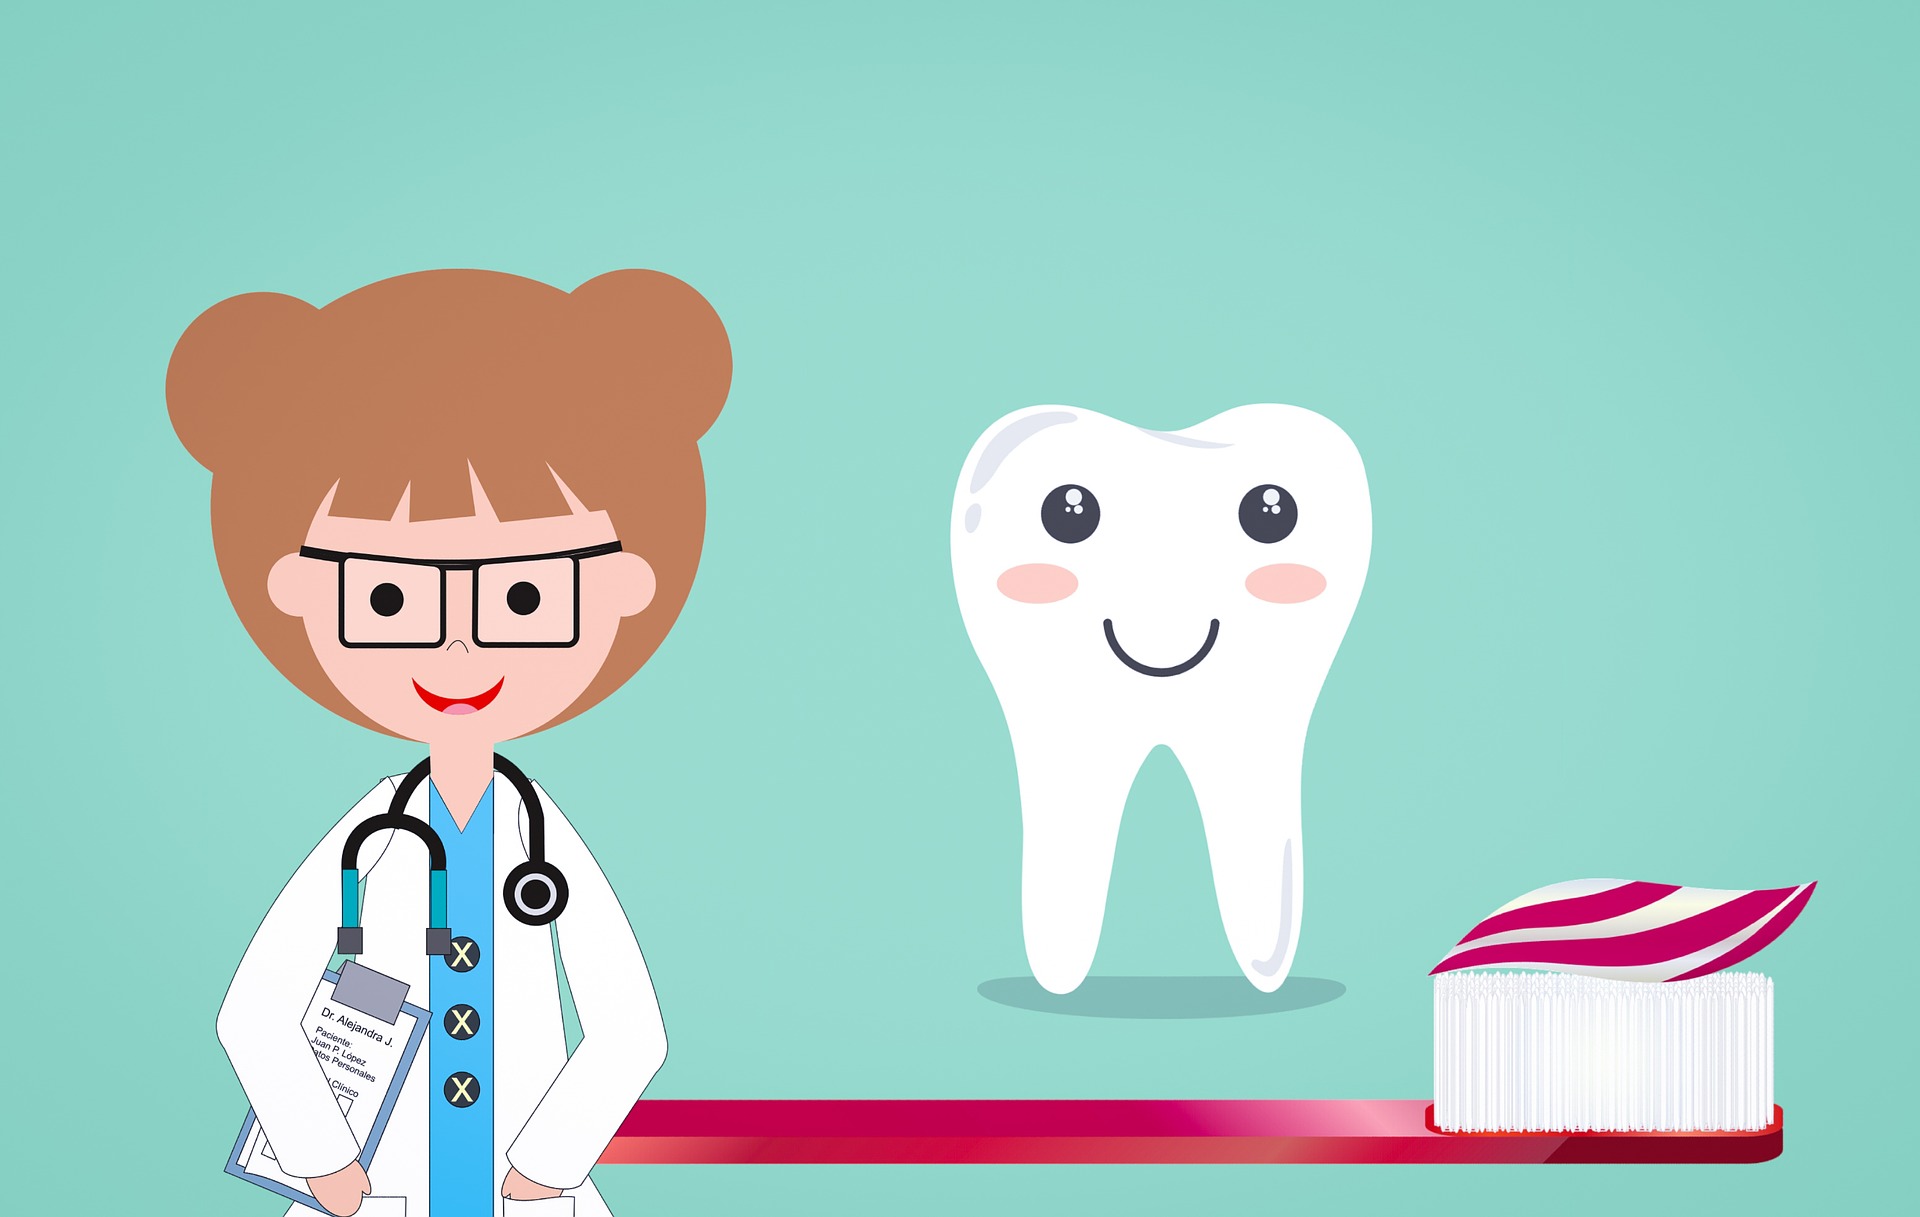 טיפולי שיניים לילדים במסגרת סל הבריאות: מה הזכויות שלכם?